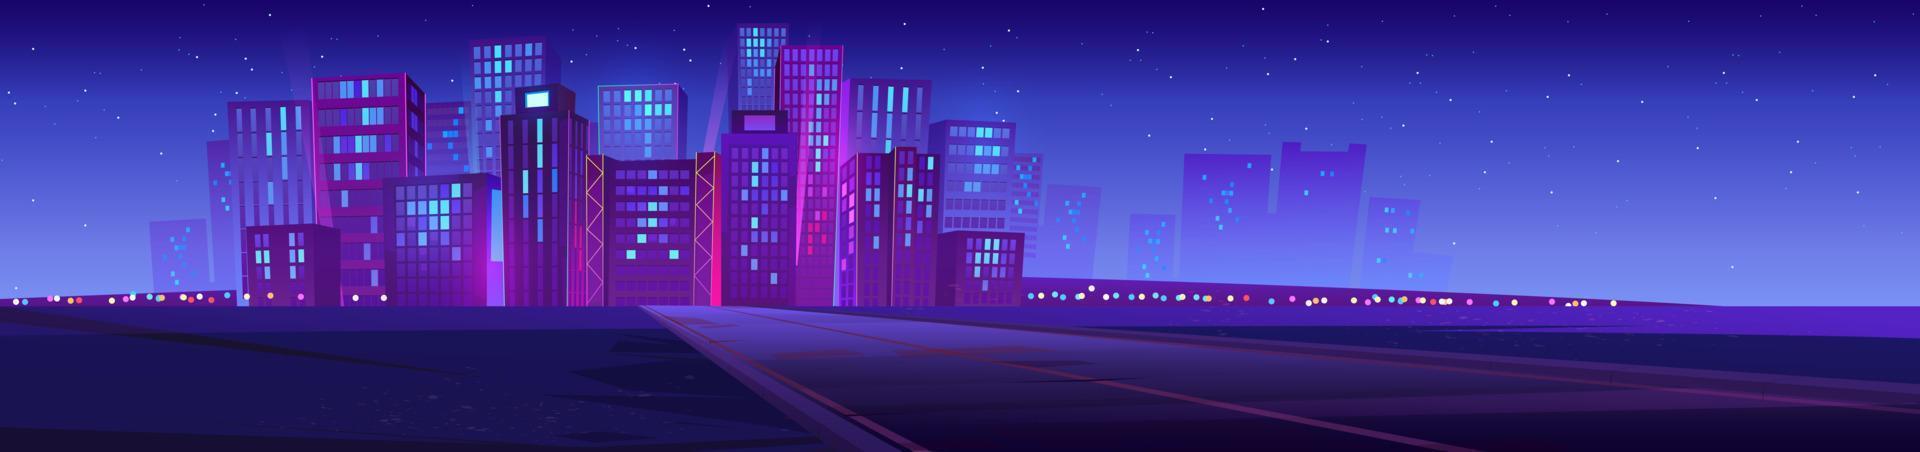 horisont med stad byggnader och väg på natt vektor